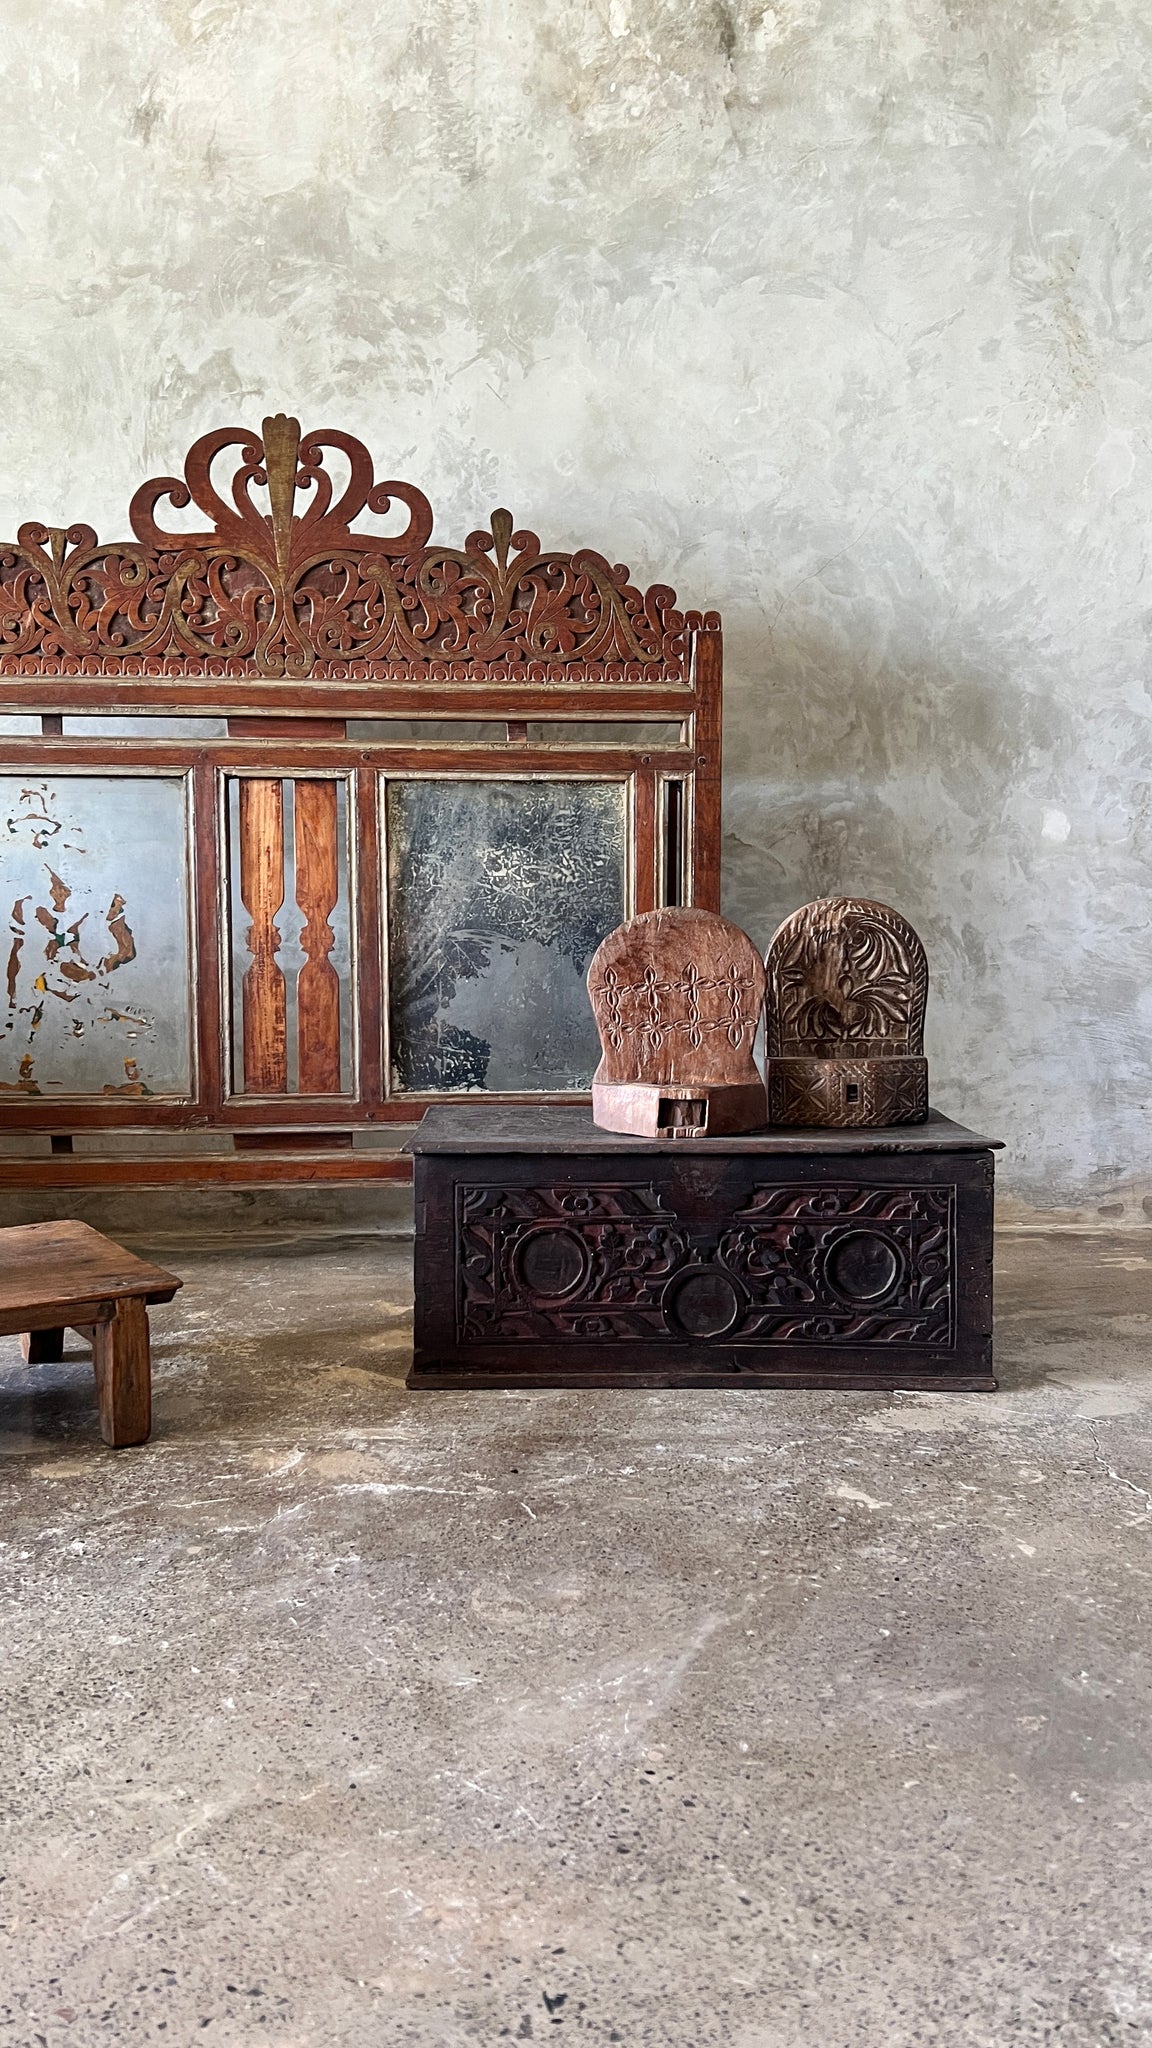 Ancien petit coffre en bois sculpté indonésien